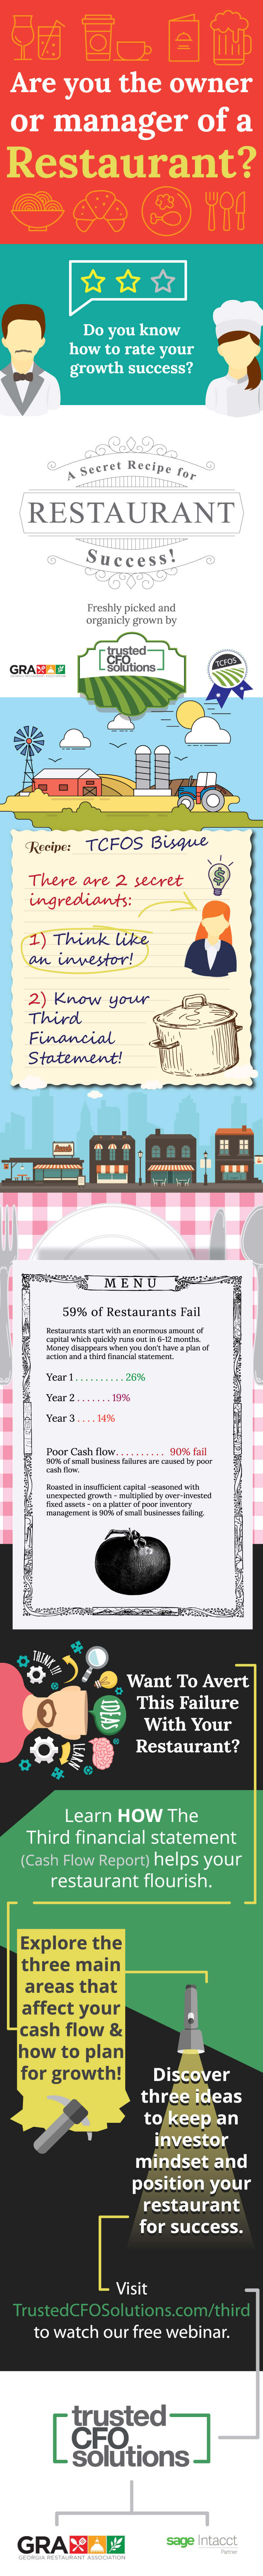 Infographic - The Secret Recipe For Restaurant Succes